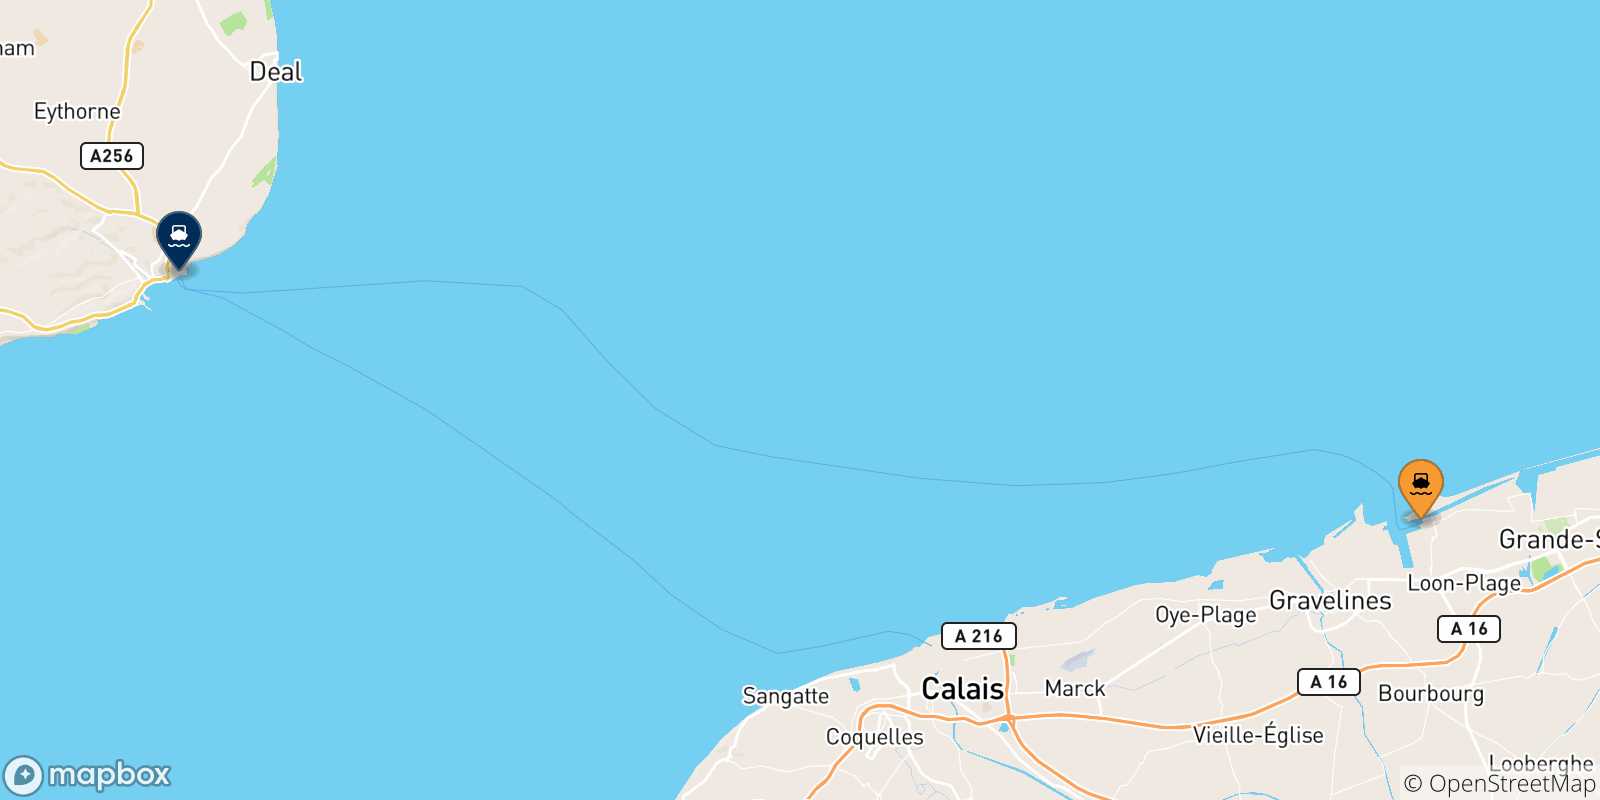 Mappa delle possibili rotte tra Dunkerque e l'Inghilterra